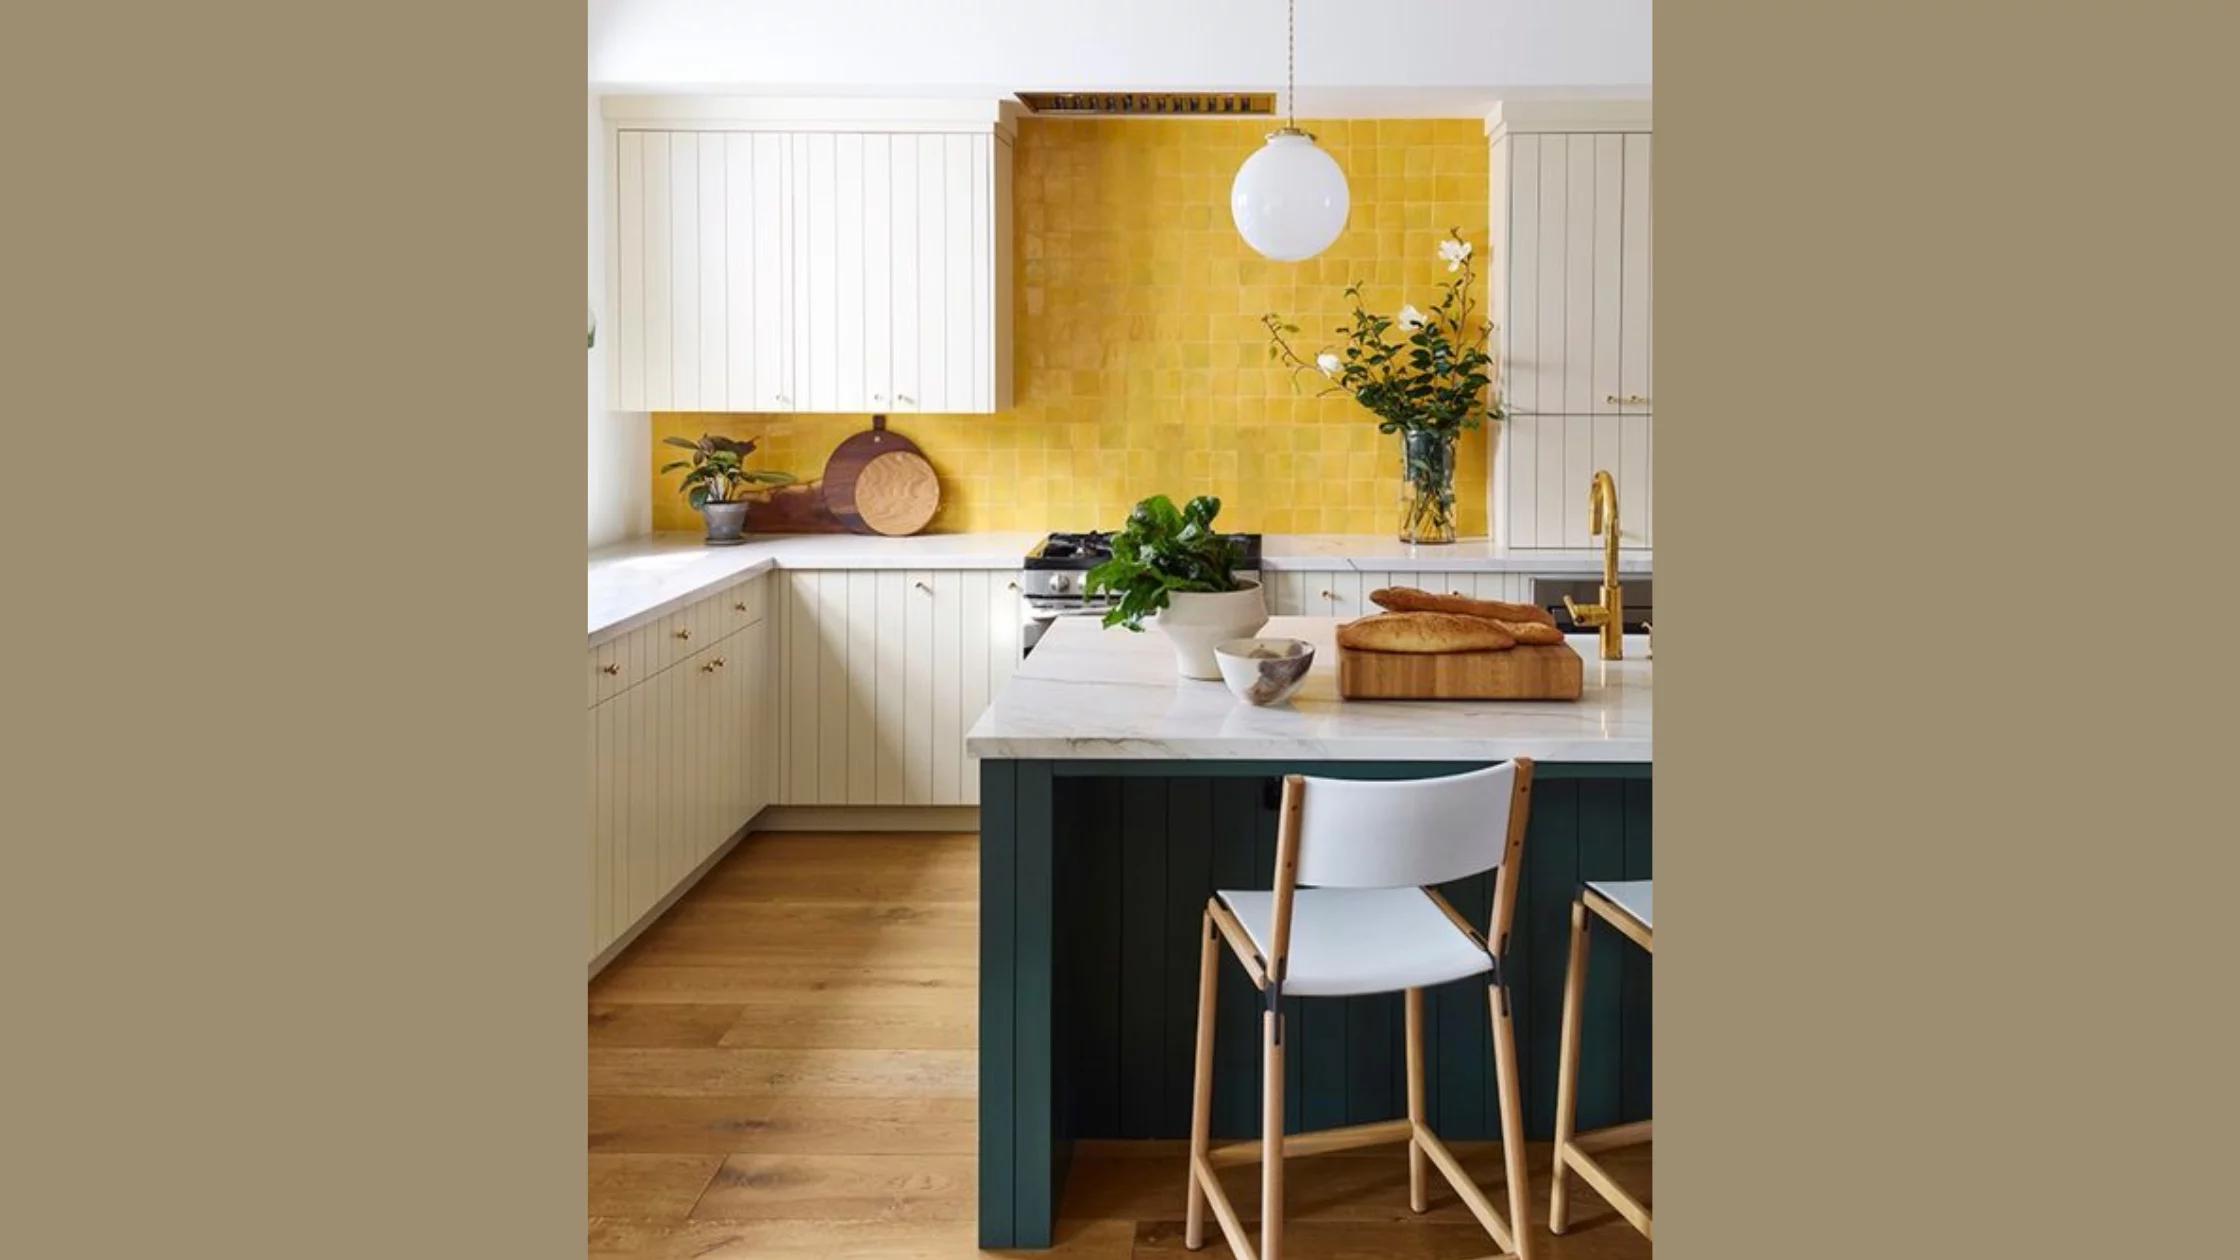 Warna Ruangan : Dapur